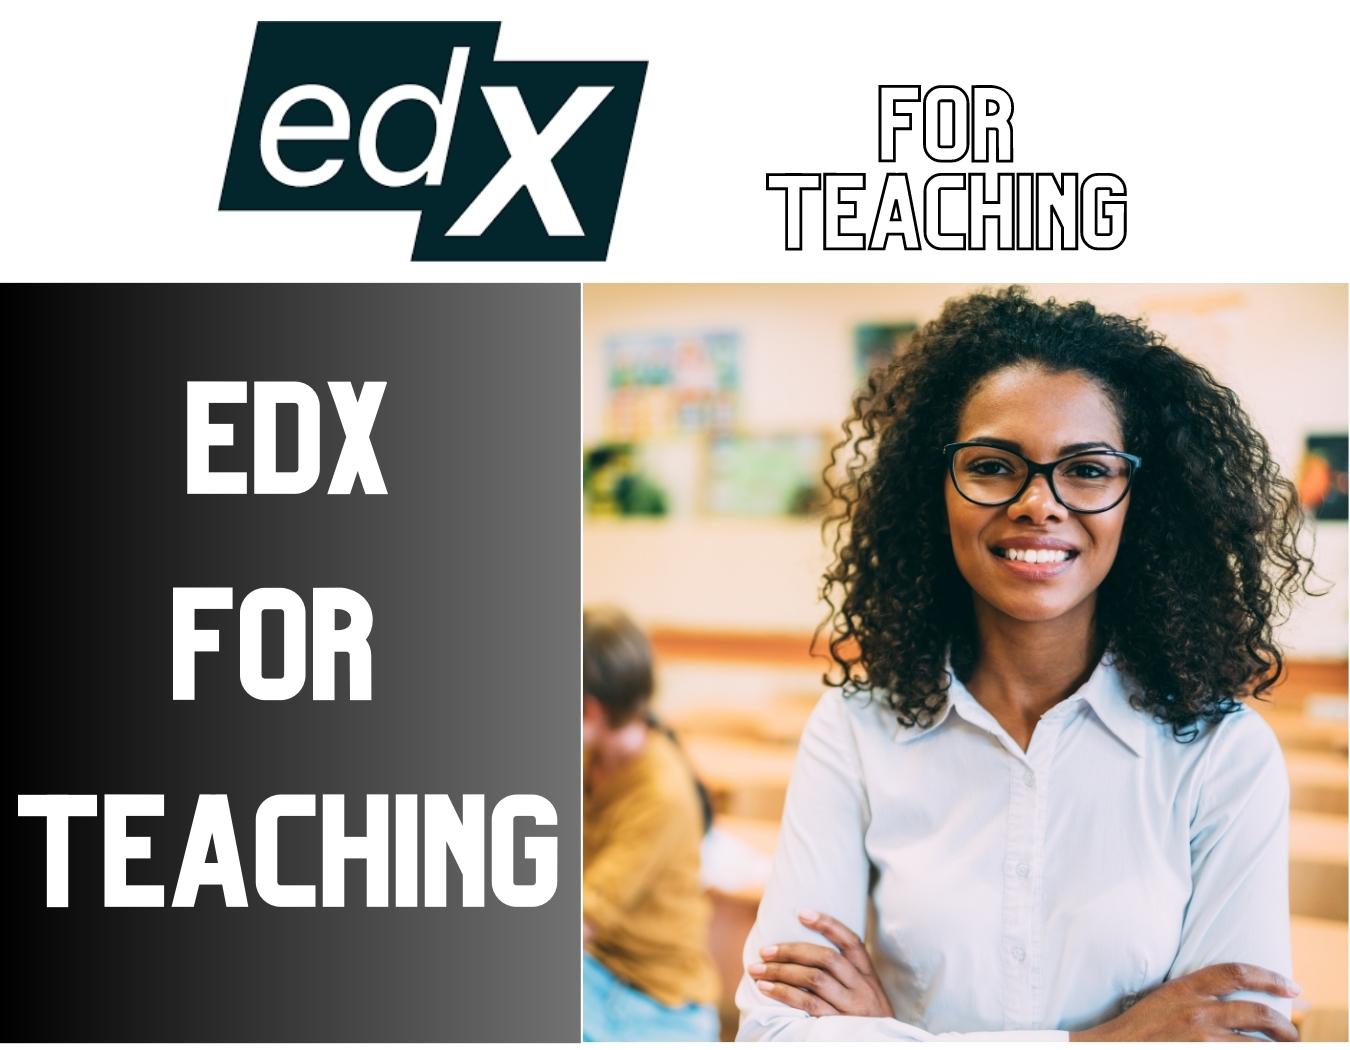 Edx for teaching